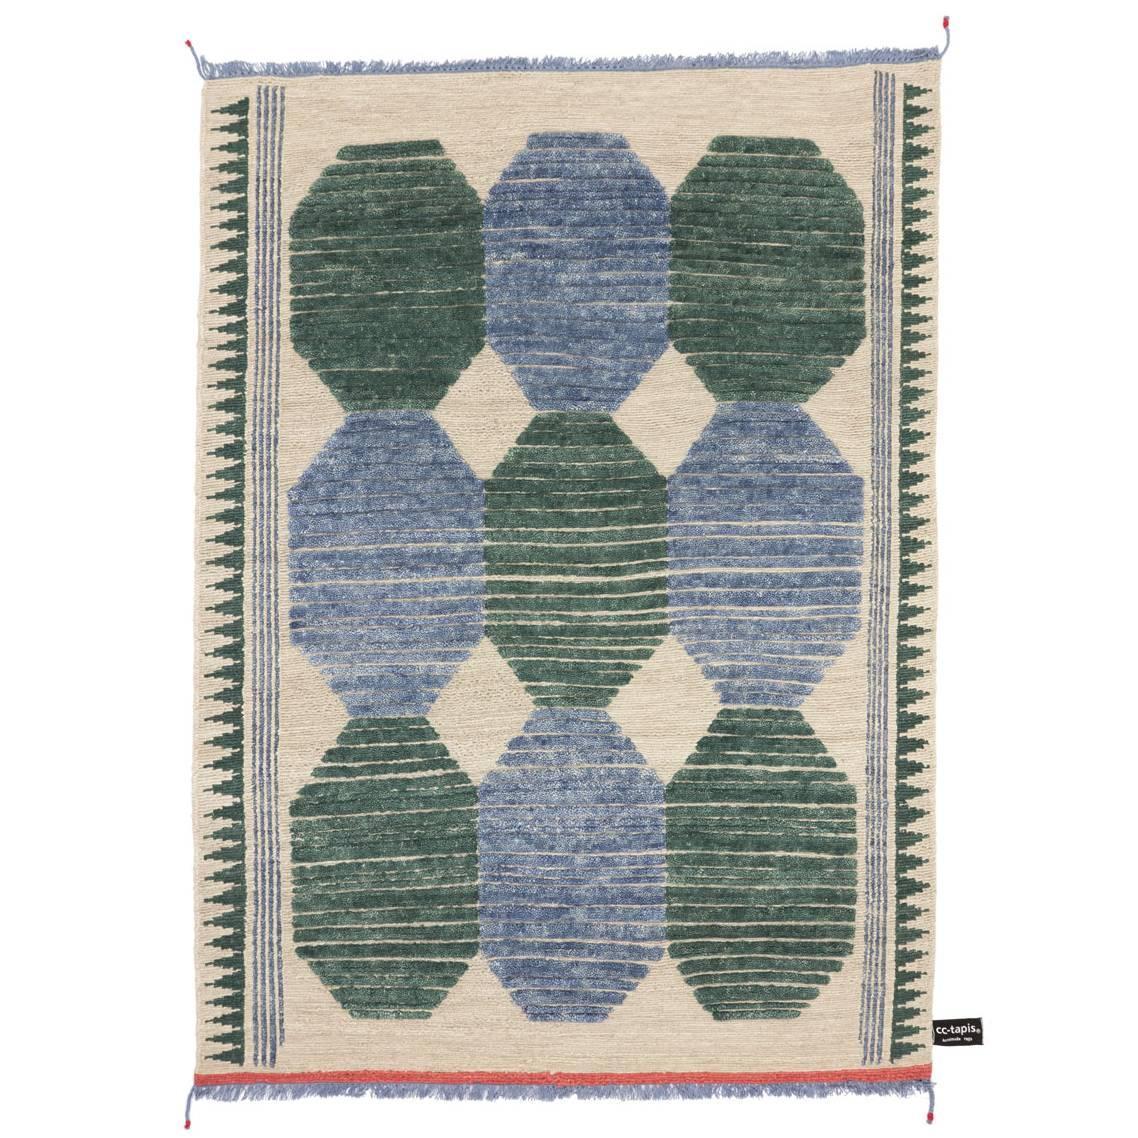 Tapis Primitive Weave C Bleu/vert n°1182 conçu par Chiara Andreatti pour cc-tapis en vente